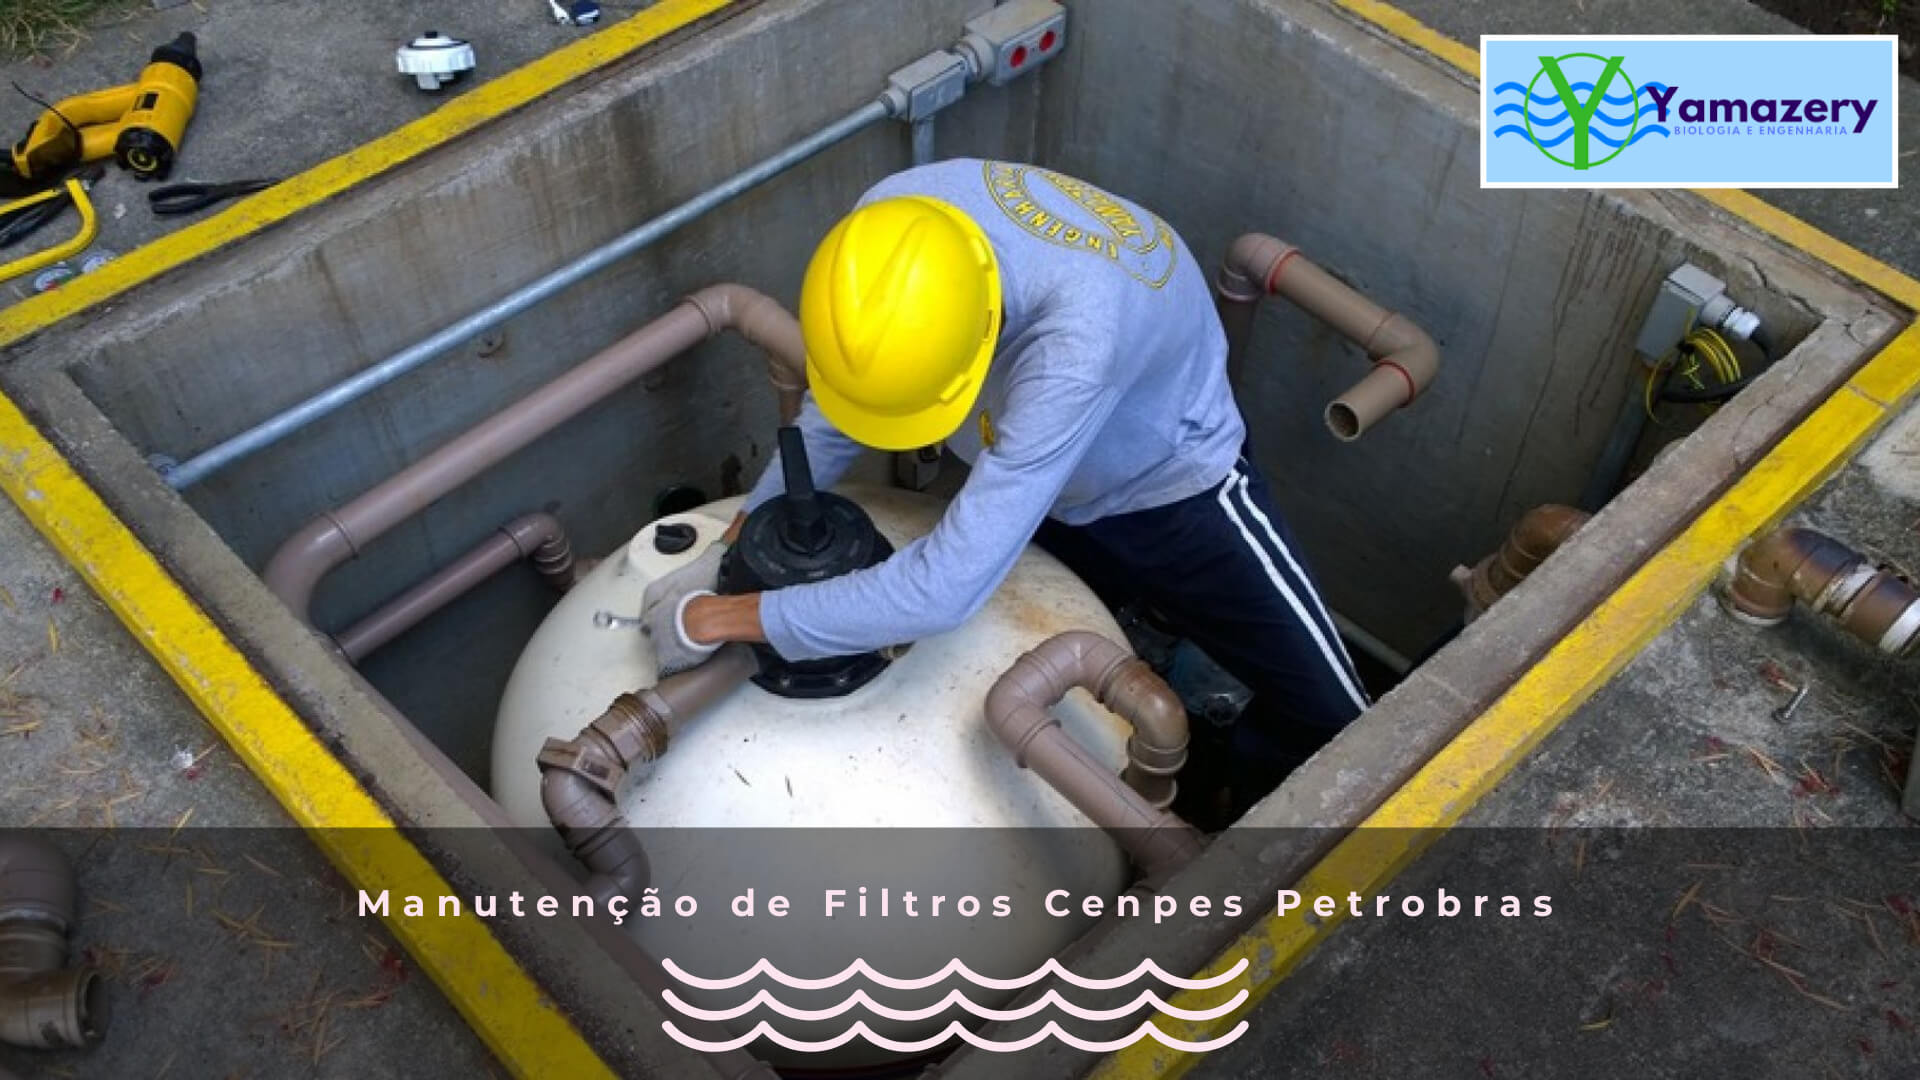 Manutenção de filtros Cenpes Petrobras